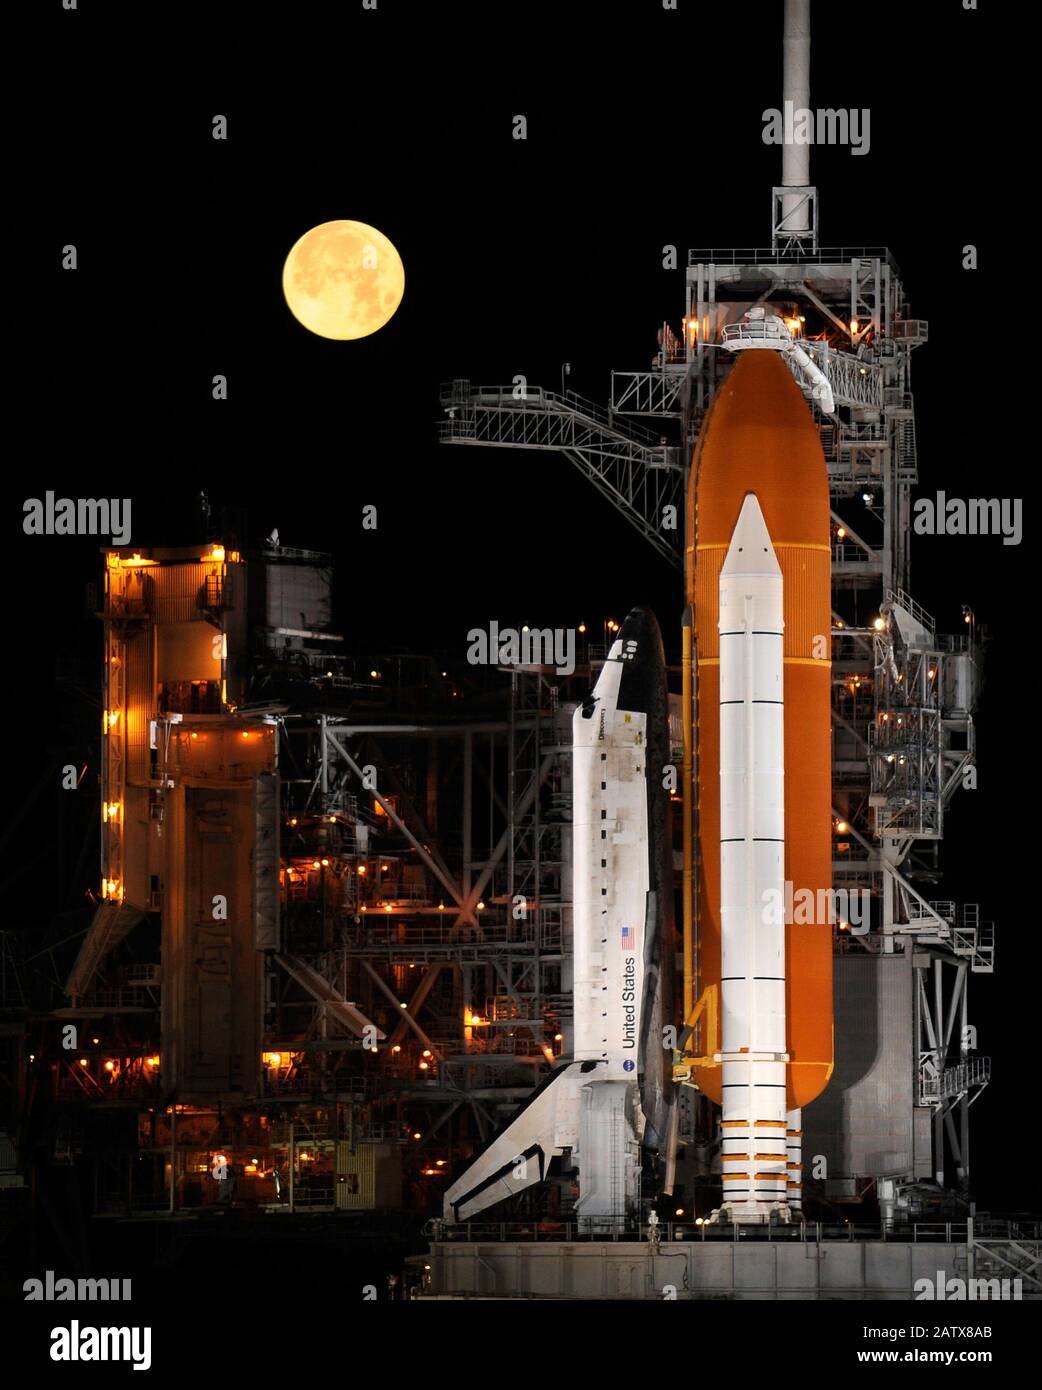 Cape CANAVERAL, Stati Uniti - 11 Mar 2009 - una luna quasi piena si imposta come la navetta spaziale Discovery ( STS 119 ) si siede in cima alla rampa di lancio 39A al Kennedy Space C. Foto Stock